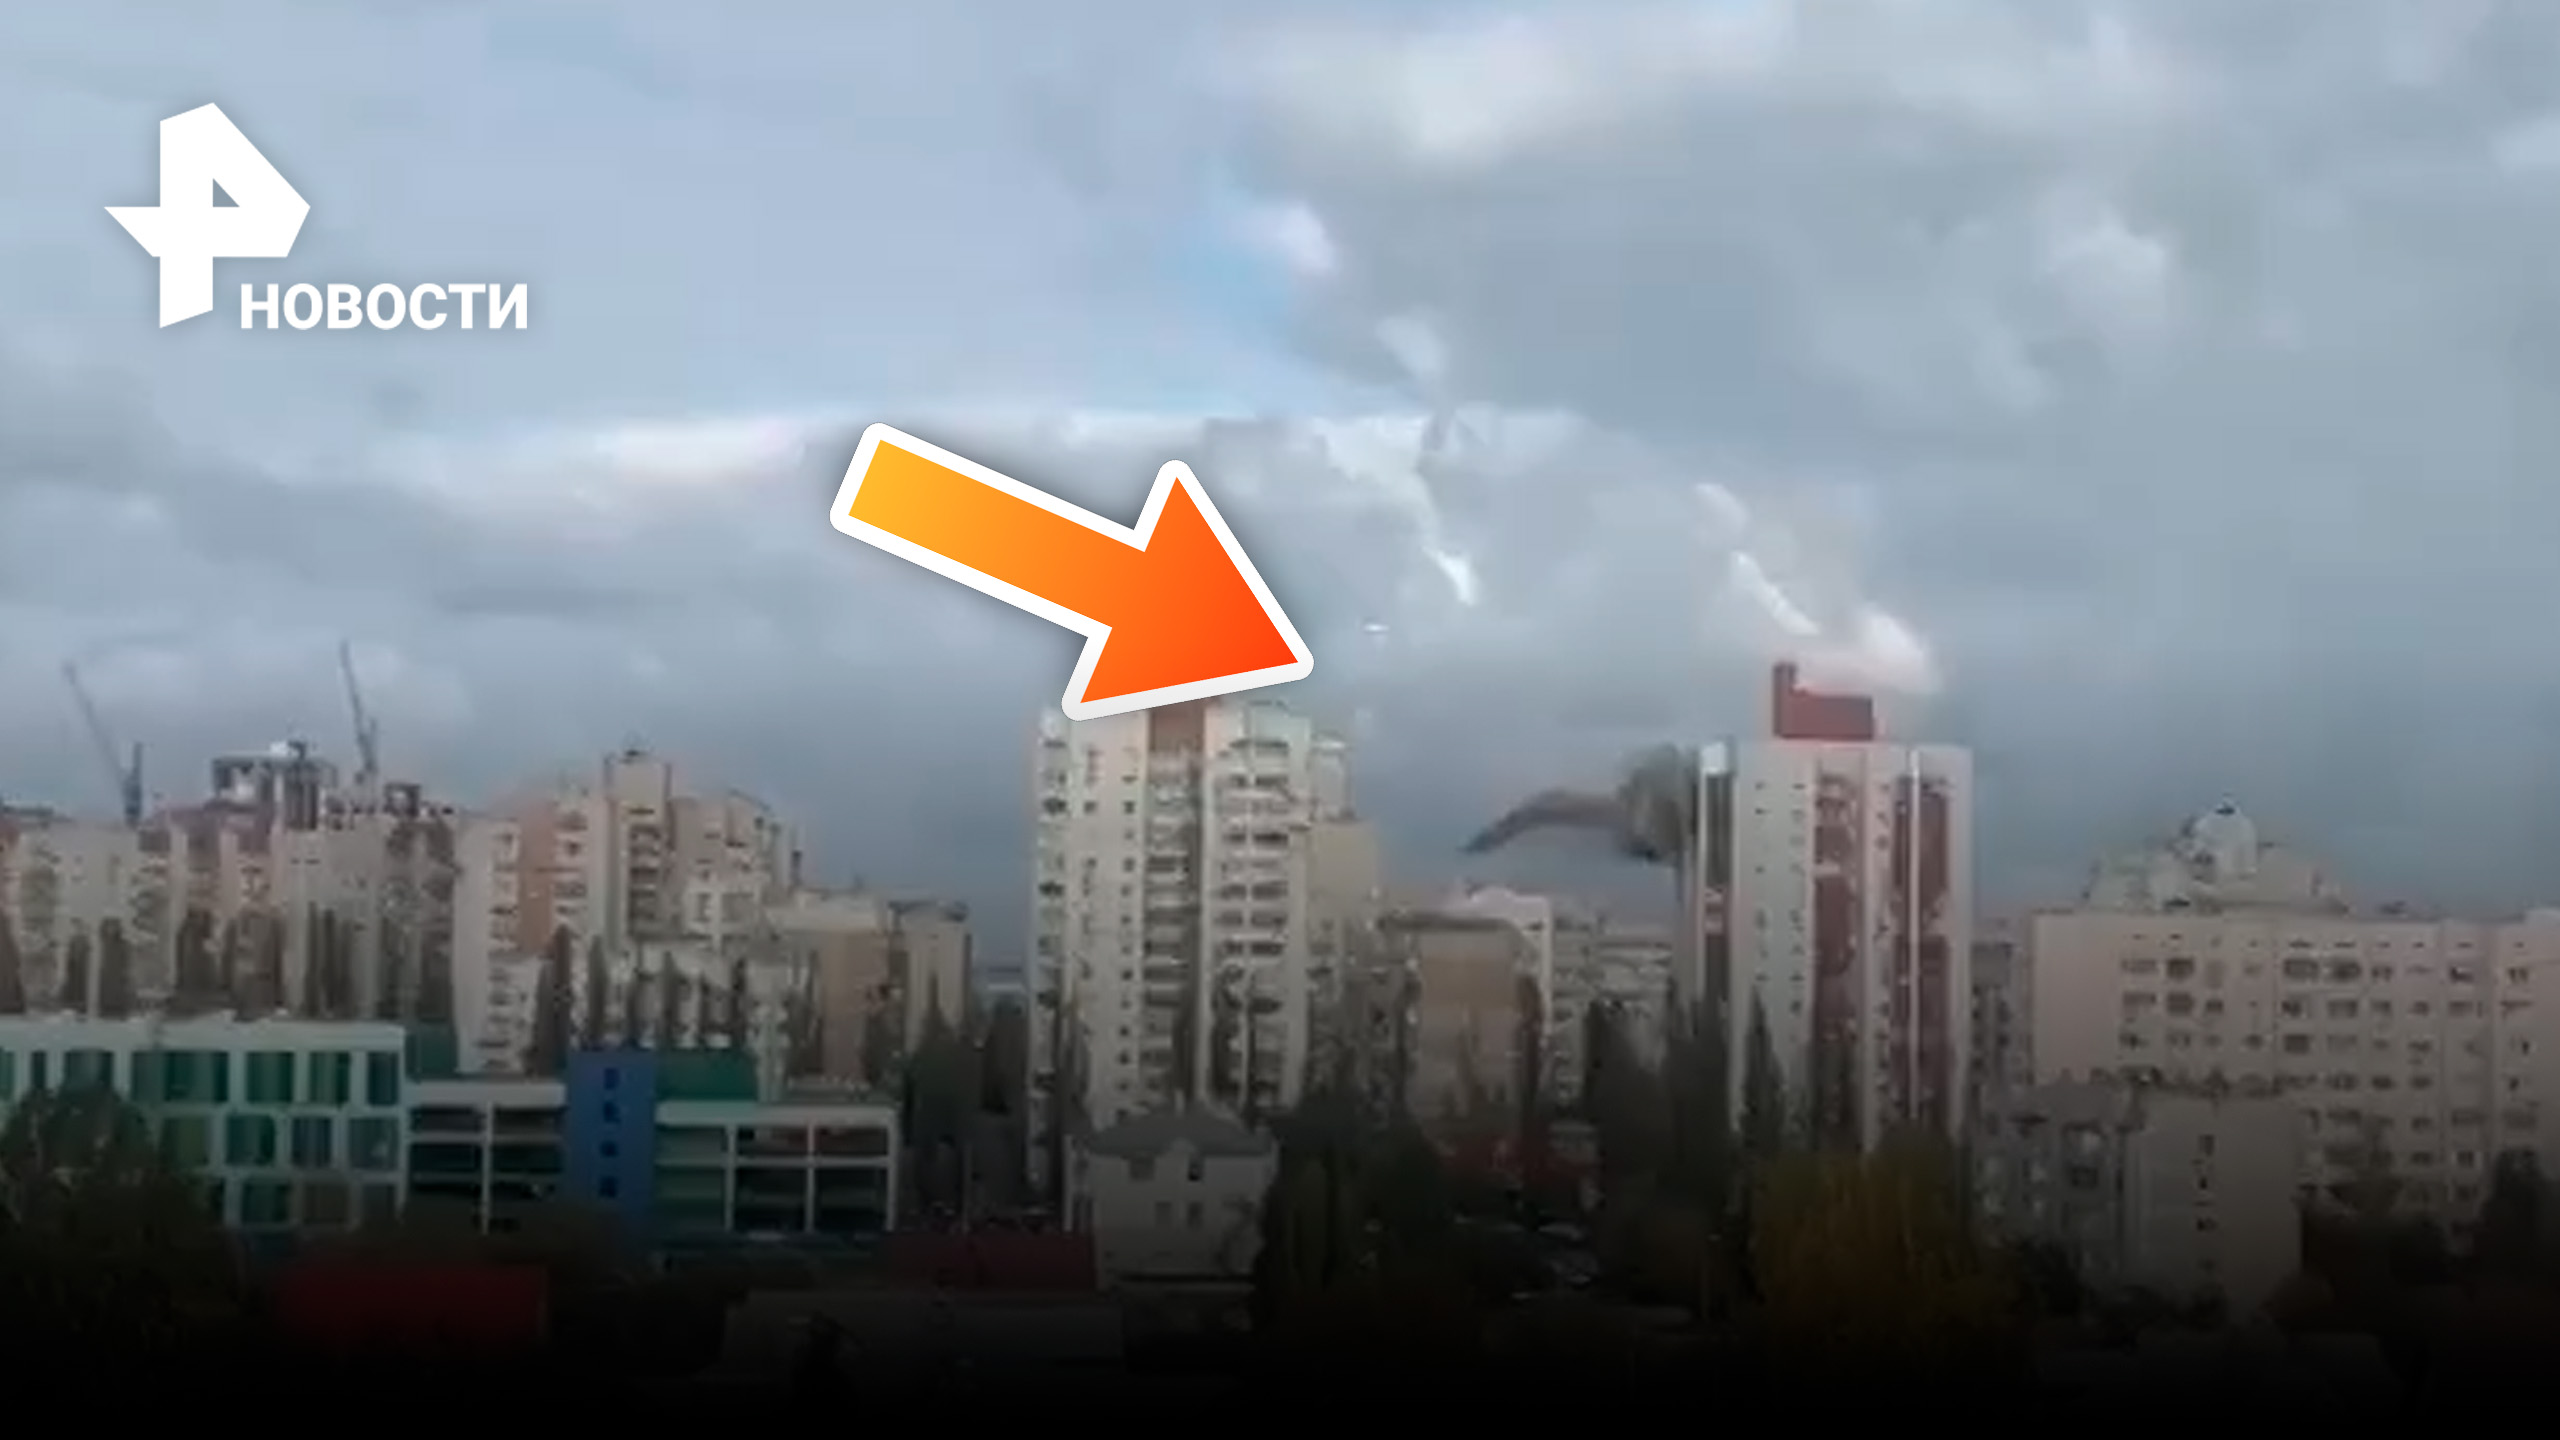  ПВО работает в Белгороде: часть сбитой ракеты упала на многоэтажку / РЕН Новости